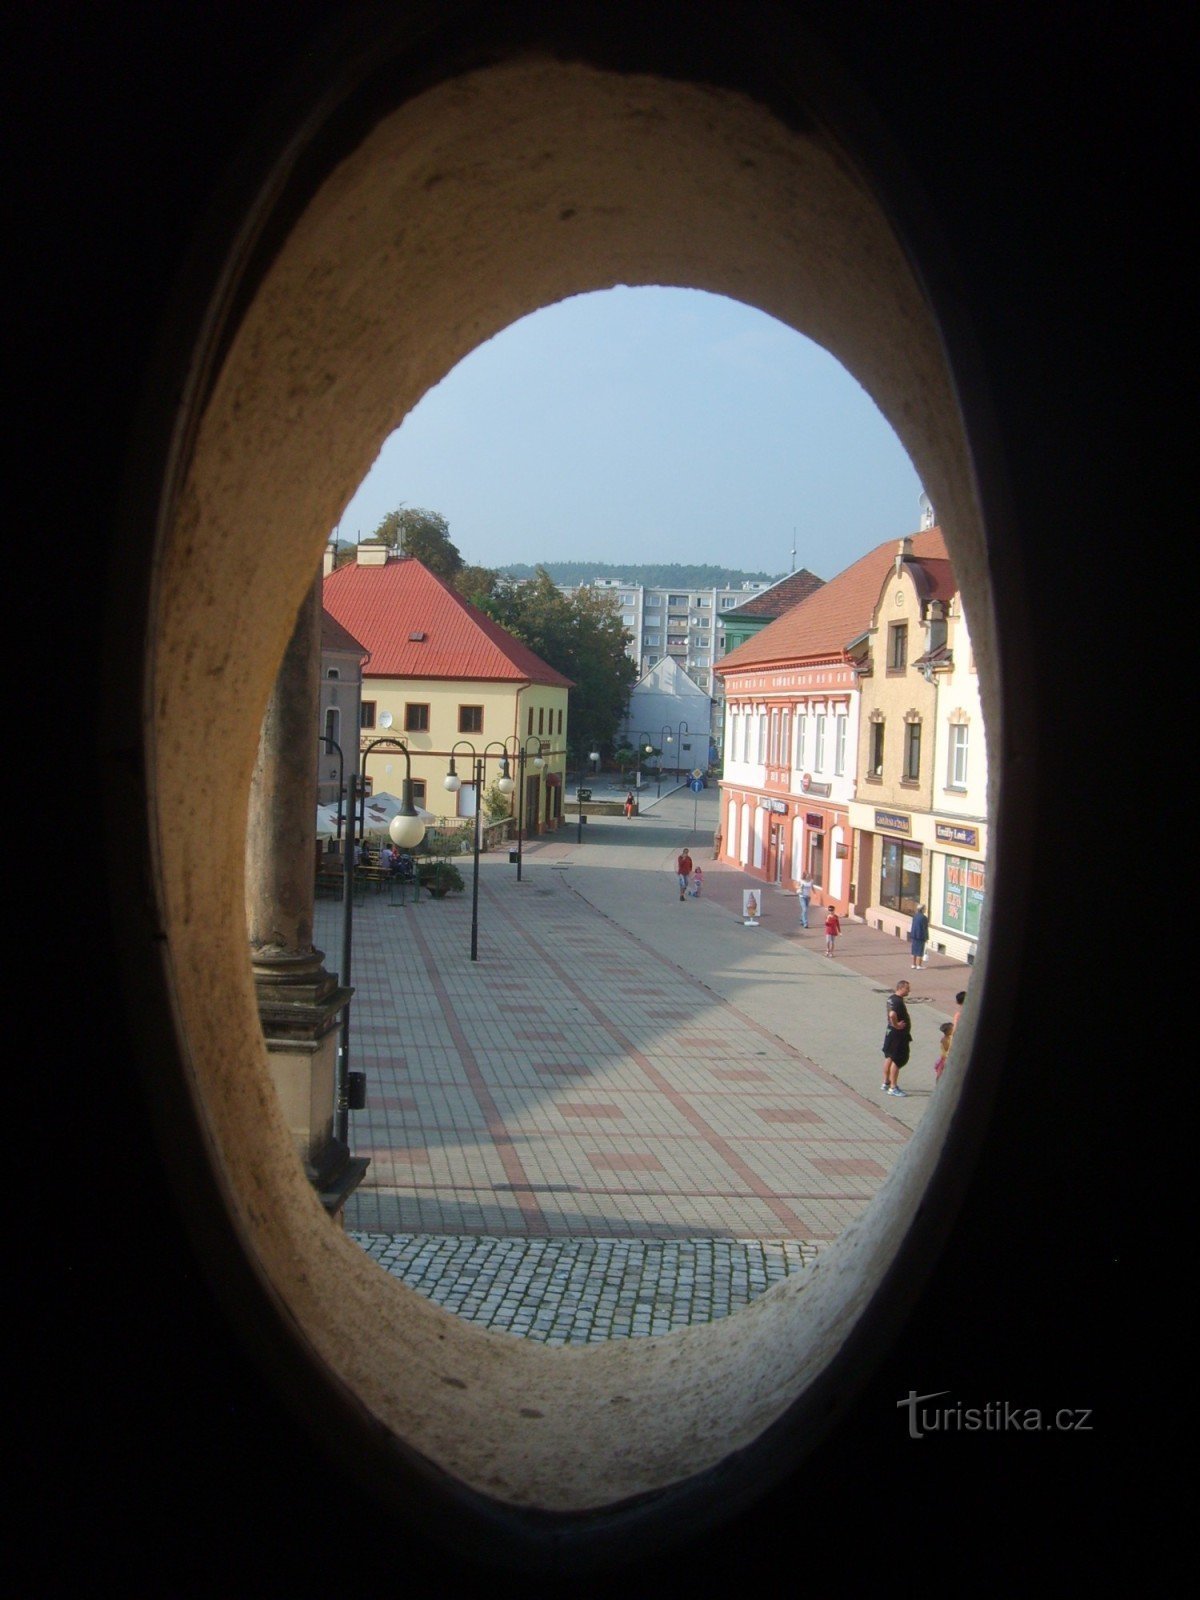 vista da janela da torre